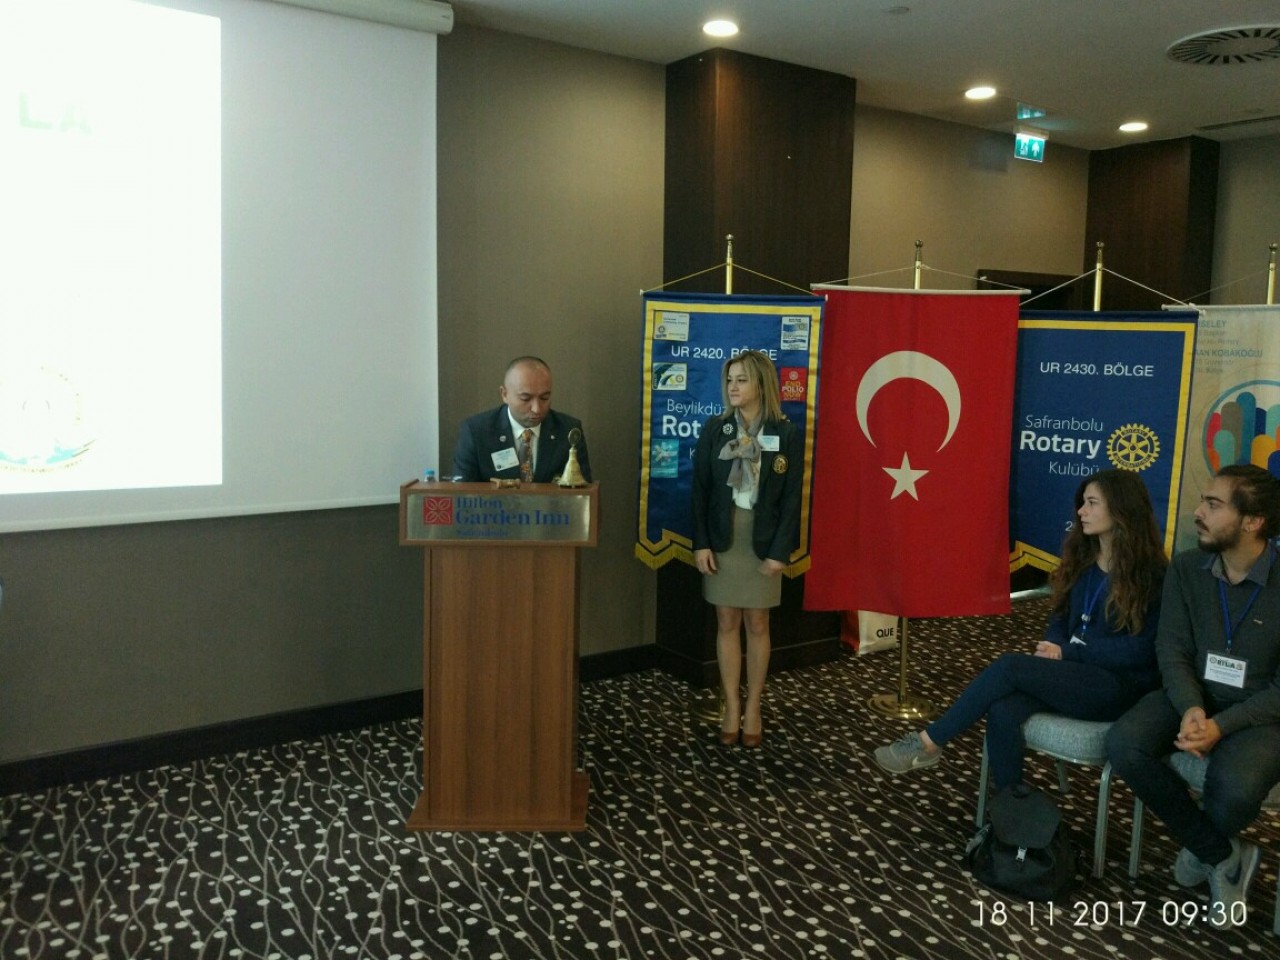  Safranbolu ve Beylikdüzü Rotary Kulübü ortak RYLA Liderlik Eğitimi semineri düzenlediler.